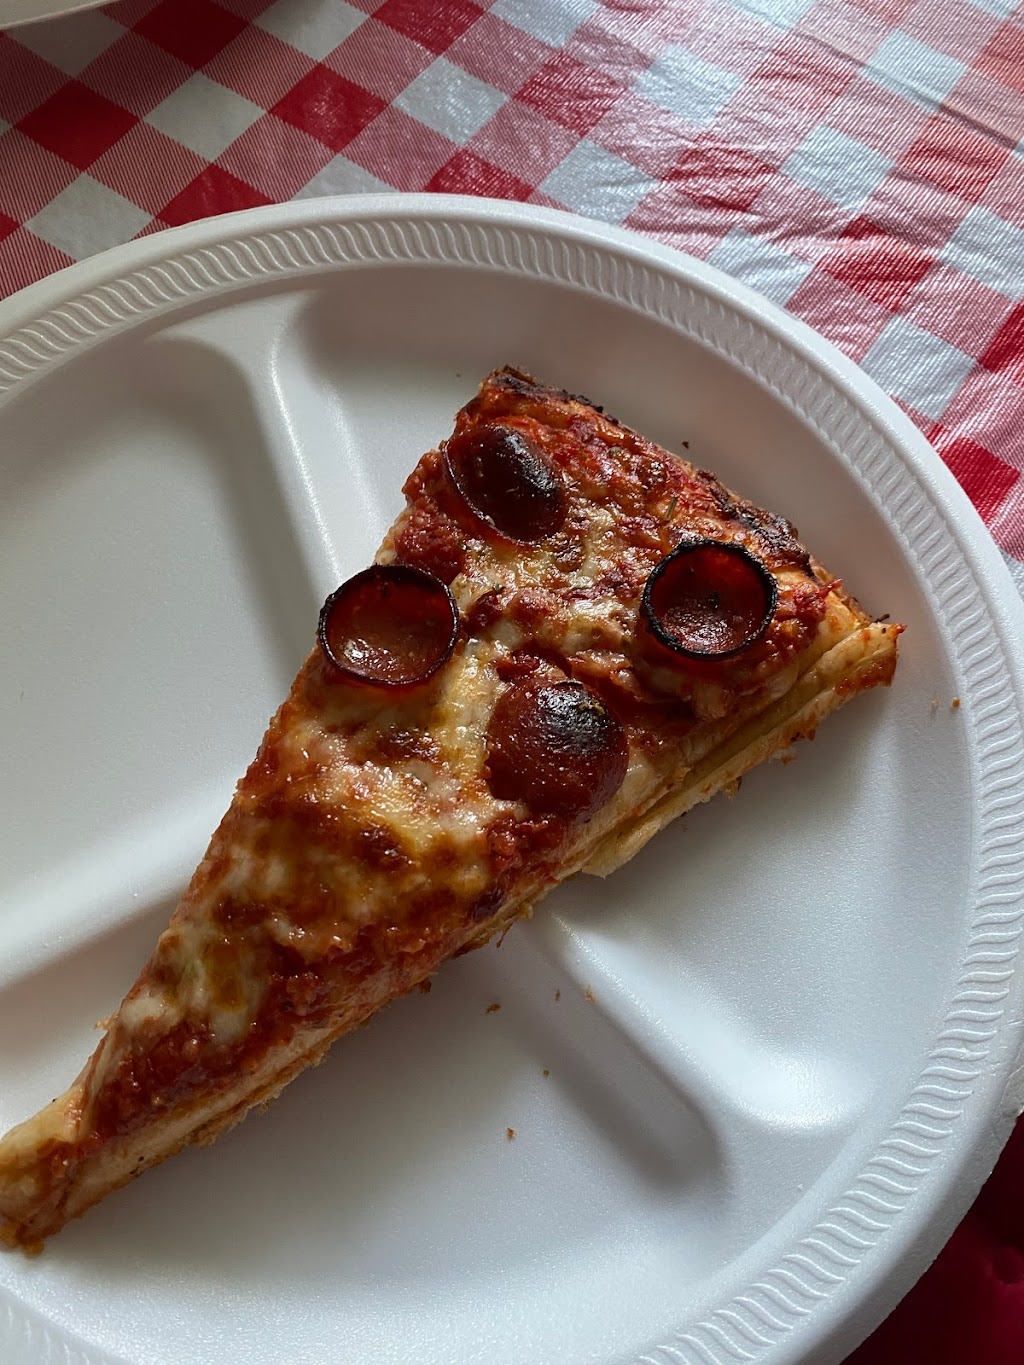 Santinos Pizza Shack | 6629 Clinton St, Elma, NY 14059 | Phone: (716) 681-1616